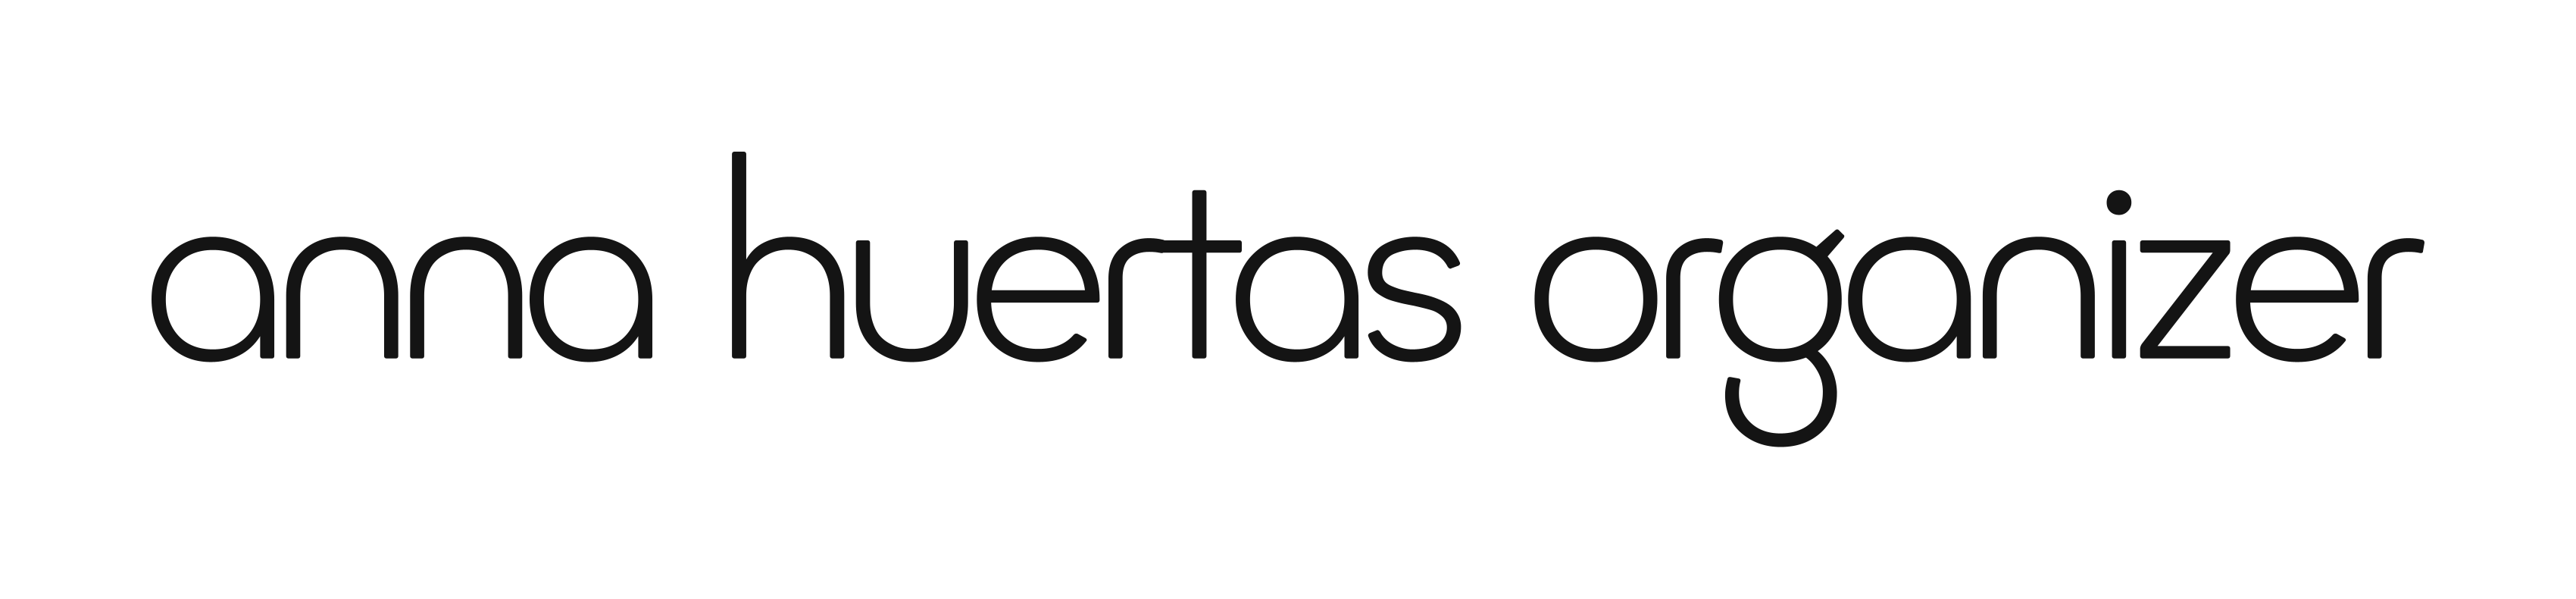 Anna Huertas Organizer Logo